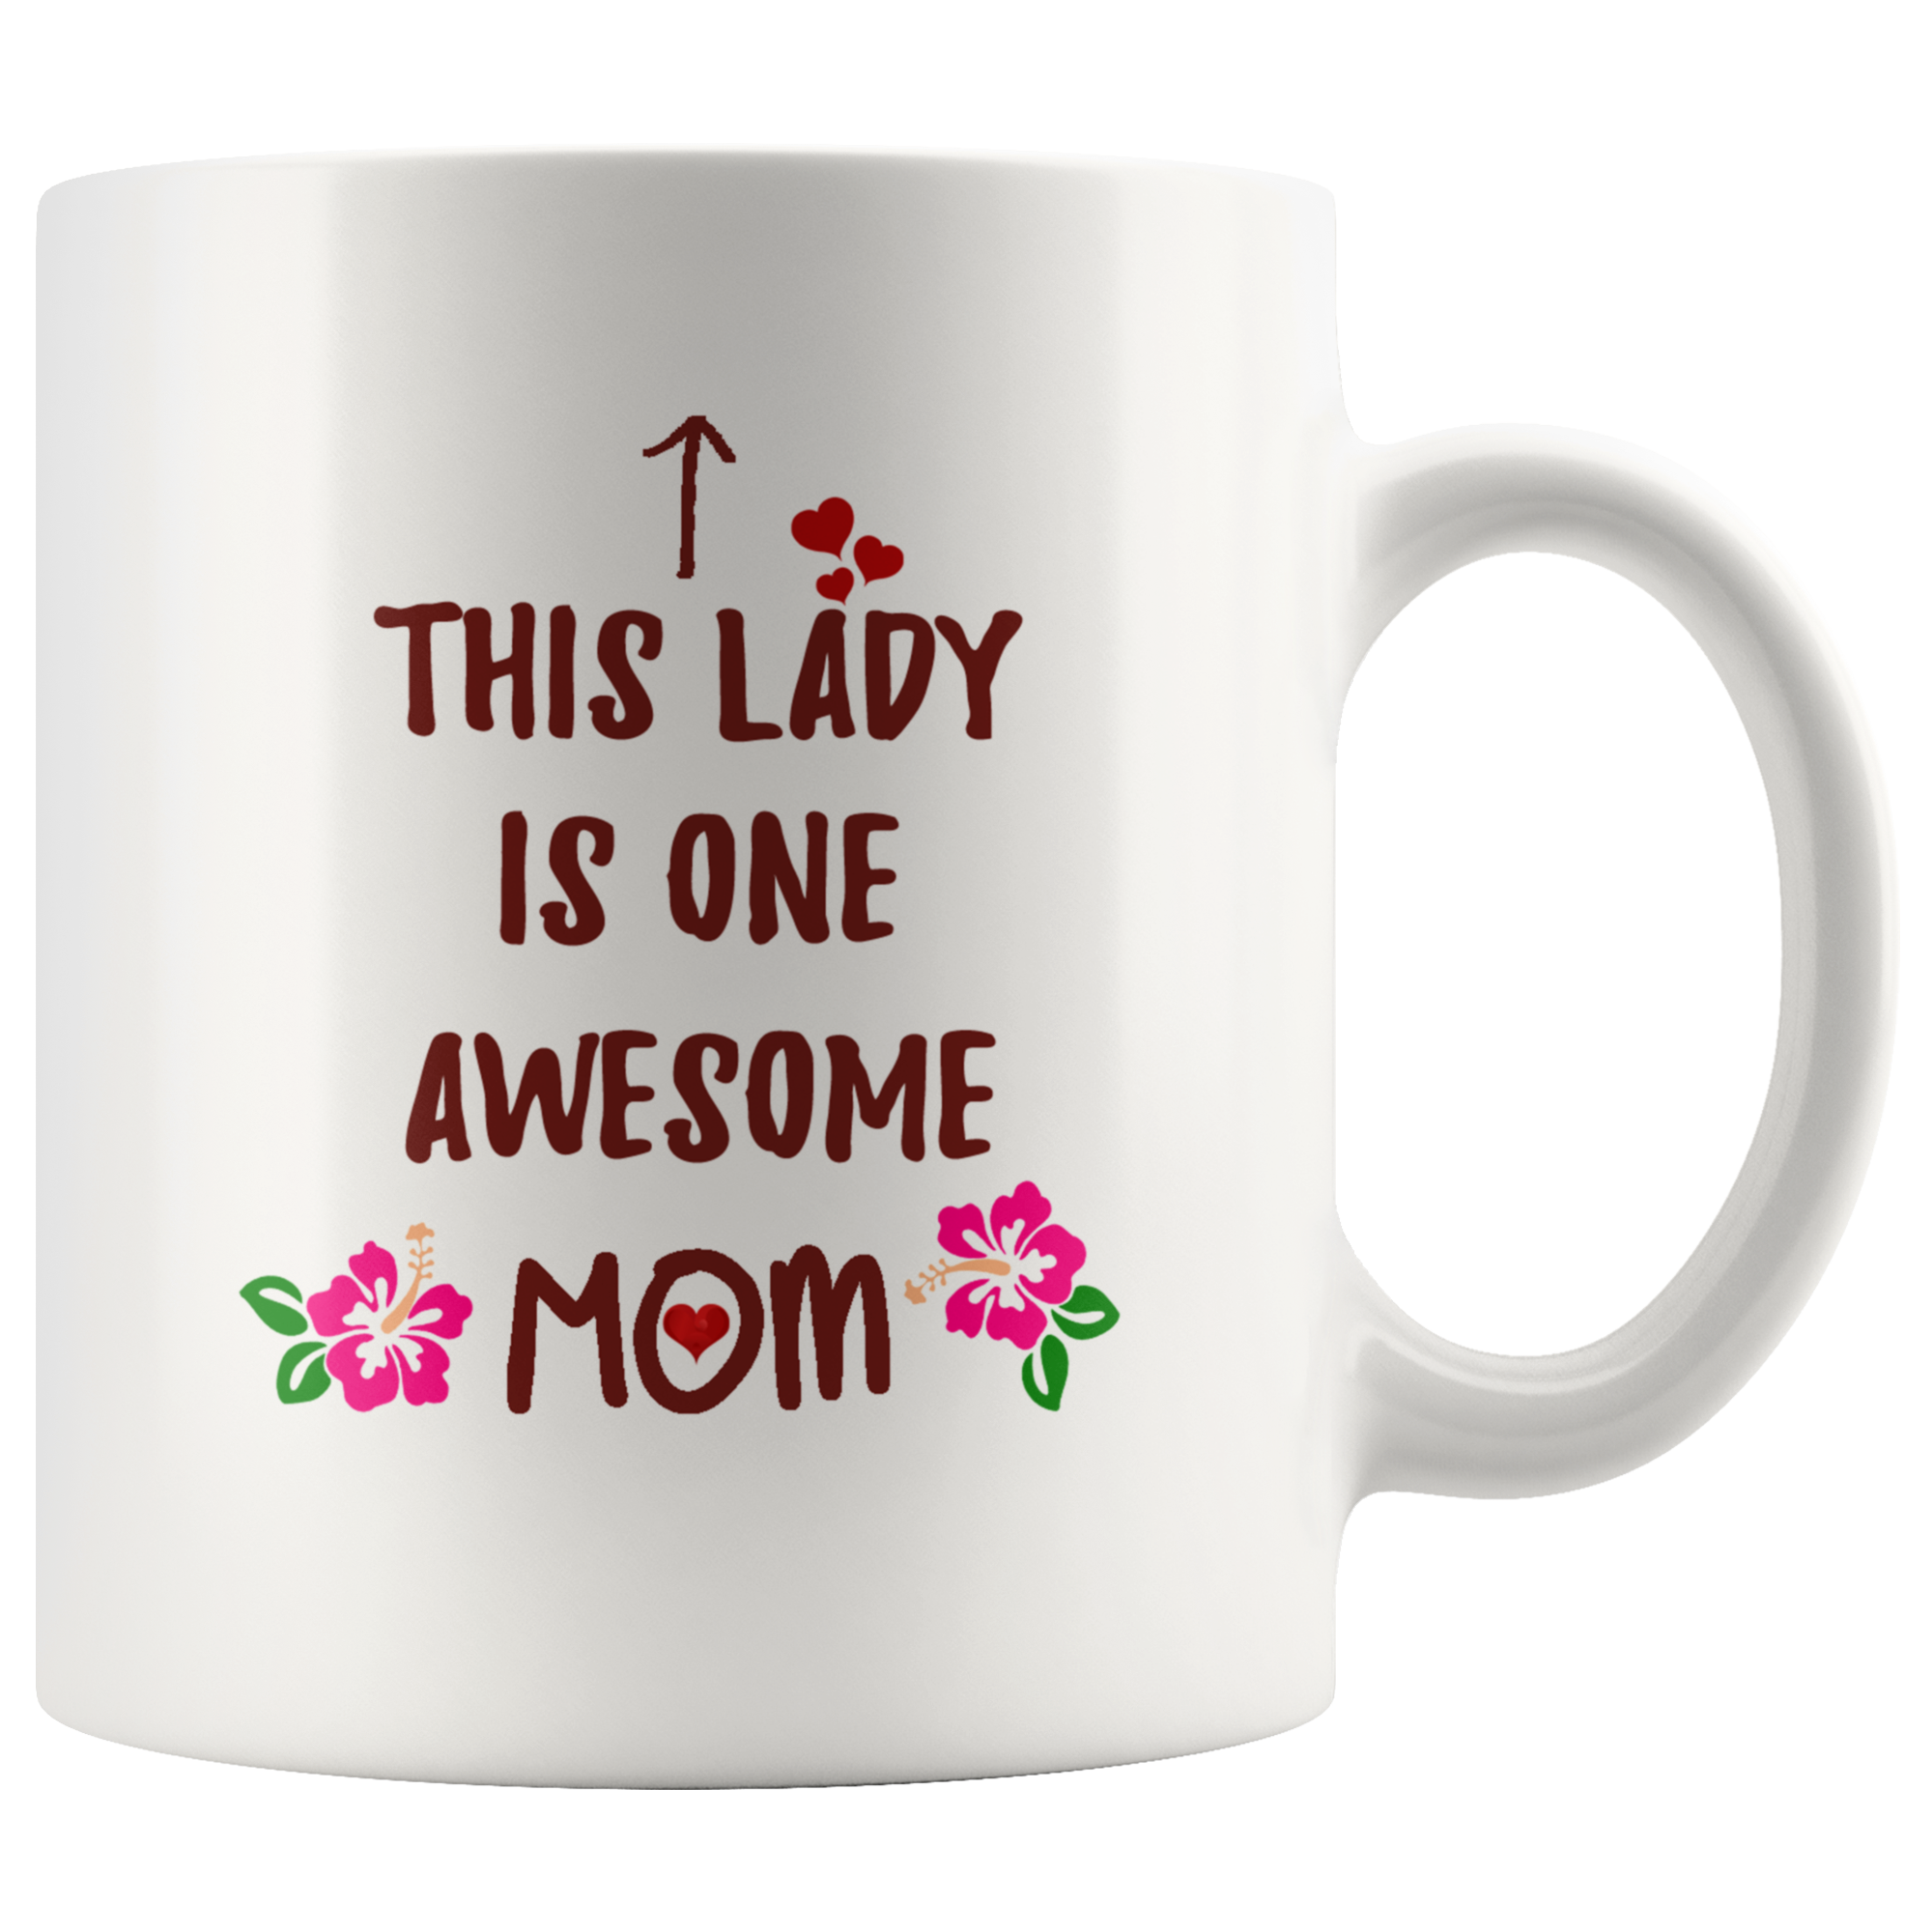 This Lady is One Awesome Mom - White 11oz Coffee Mug - PrintsBee